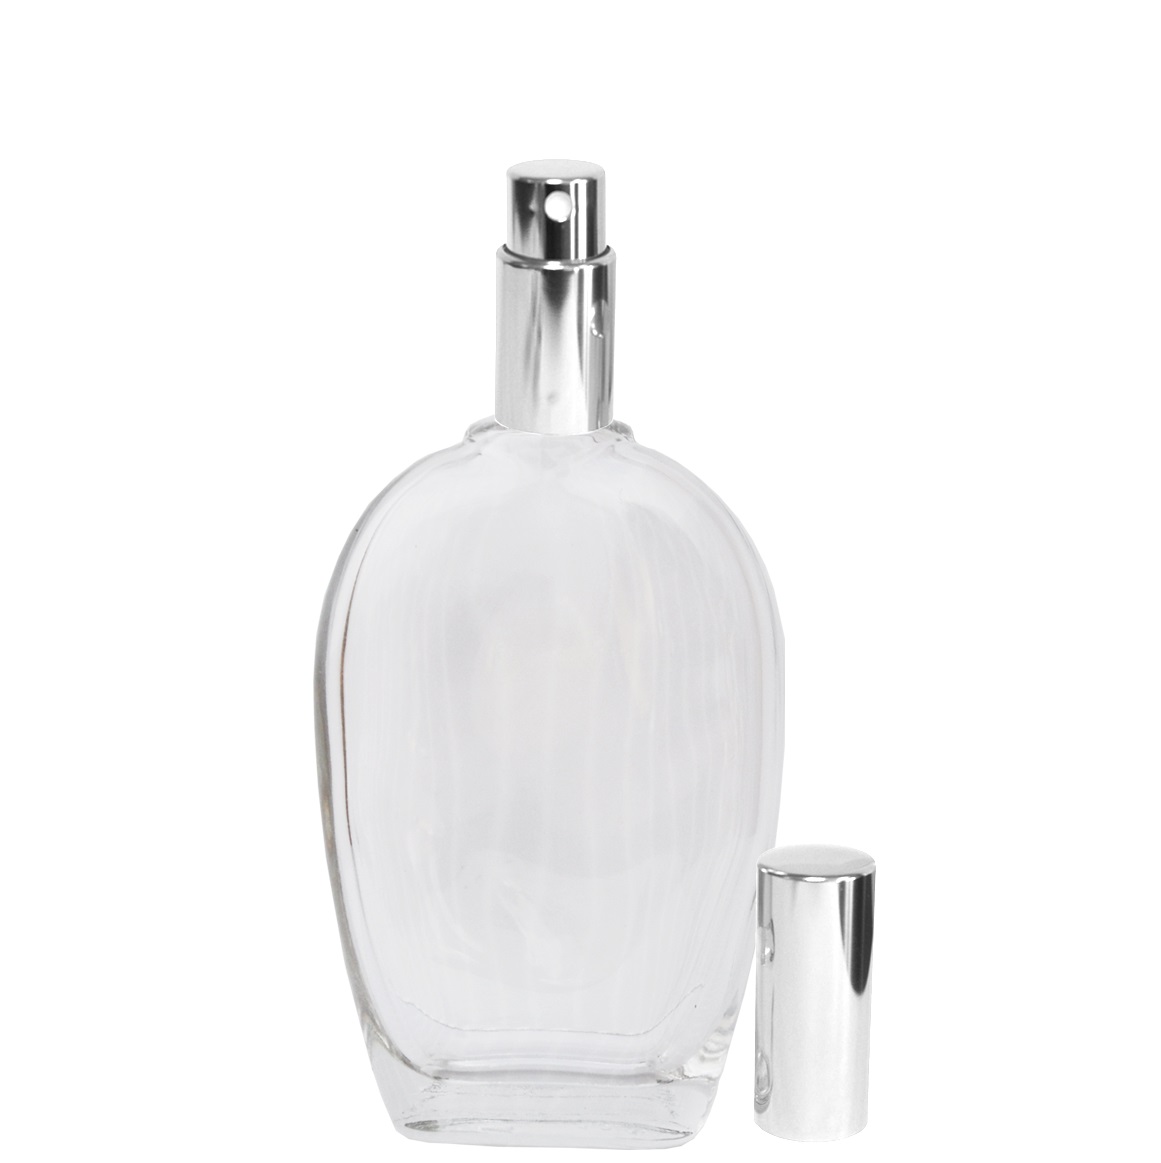 Flacons vaporisateur de parfum en verre transparent avec un